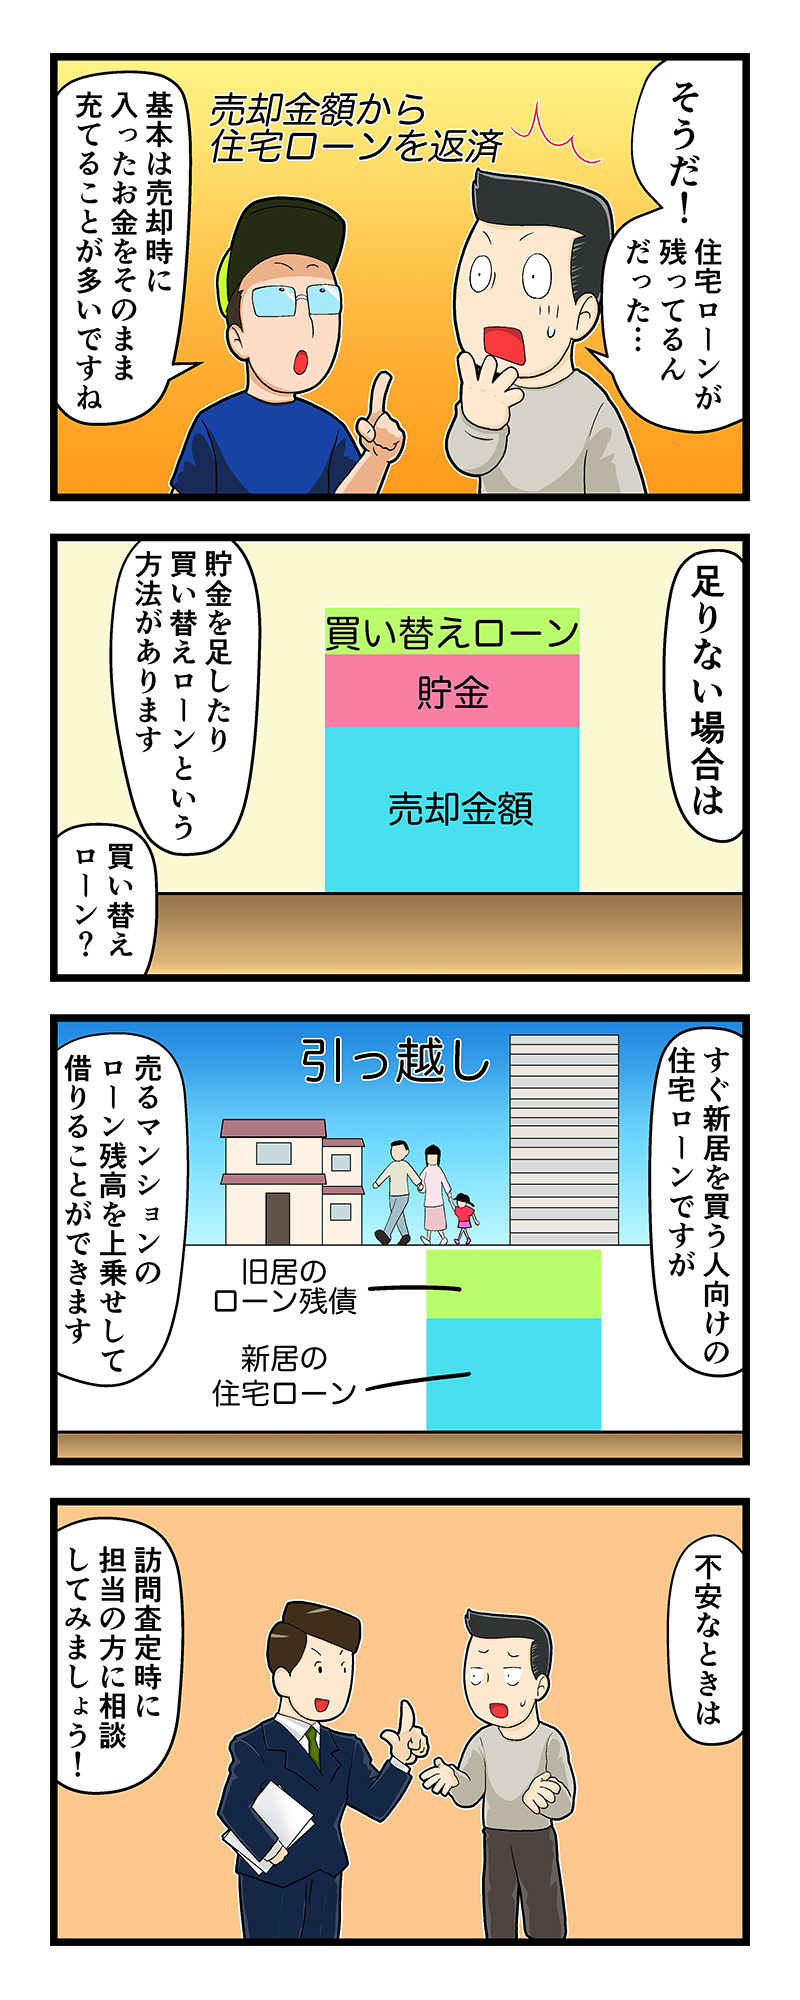 マンション売却講座四コマ漫画第4話